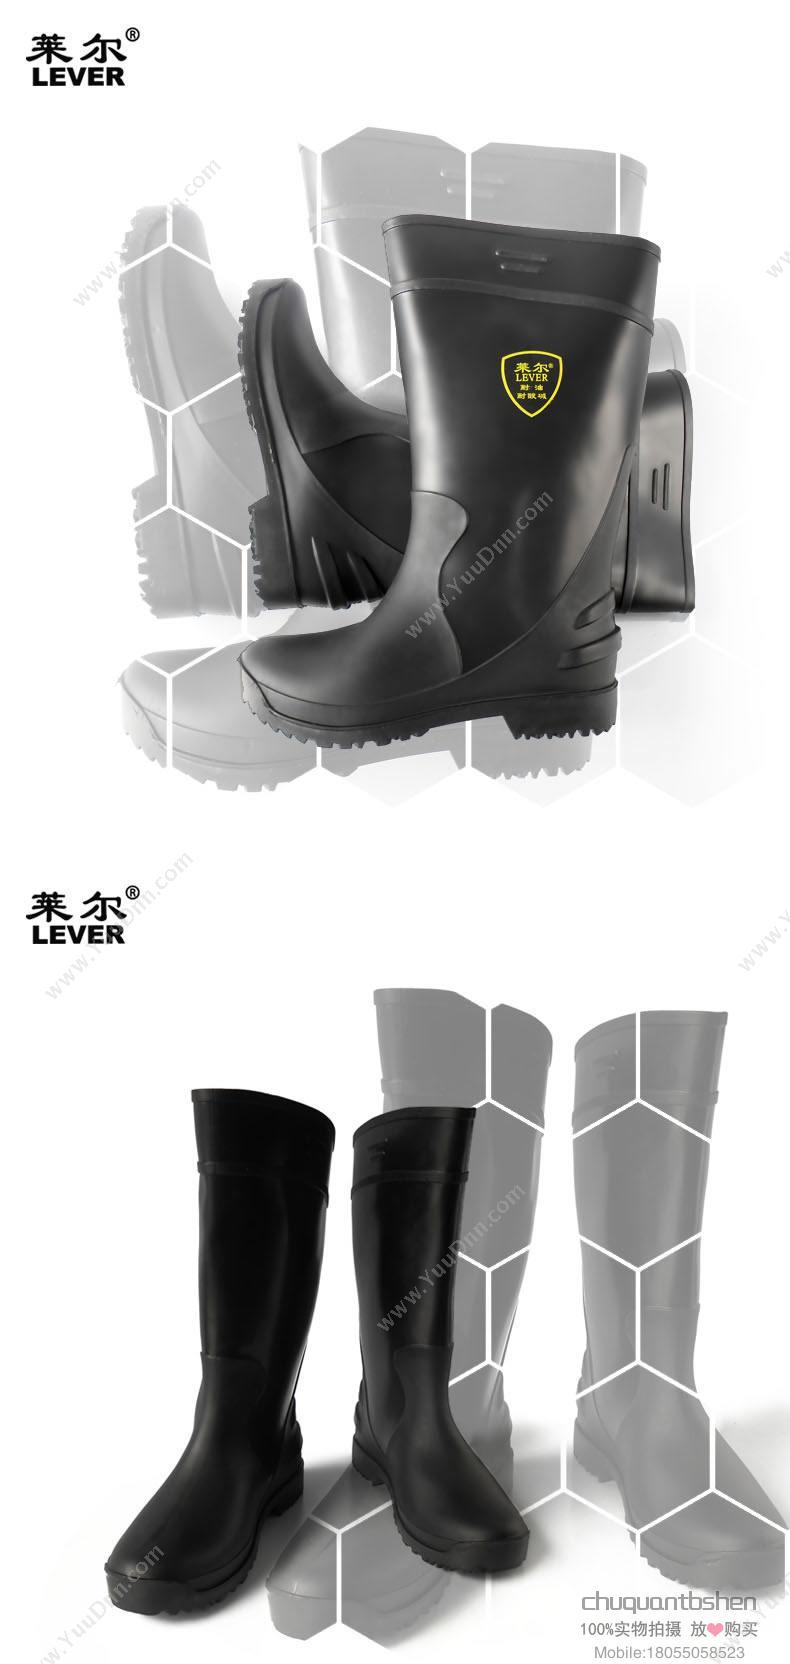 莱尔 Laier SC-11-99 耐油/耐酸碱 雨靴 36码 耐油/耐酸碱雨靴